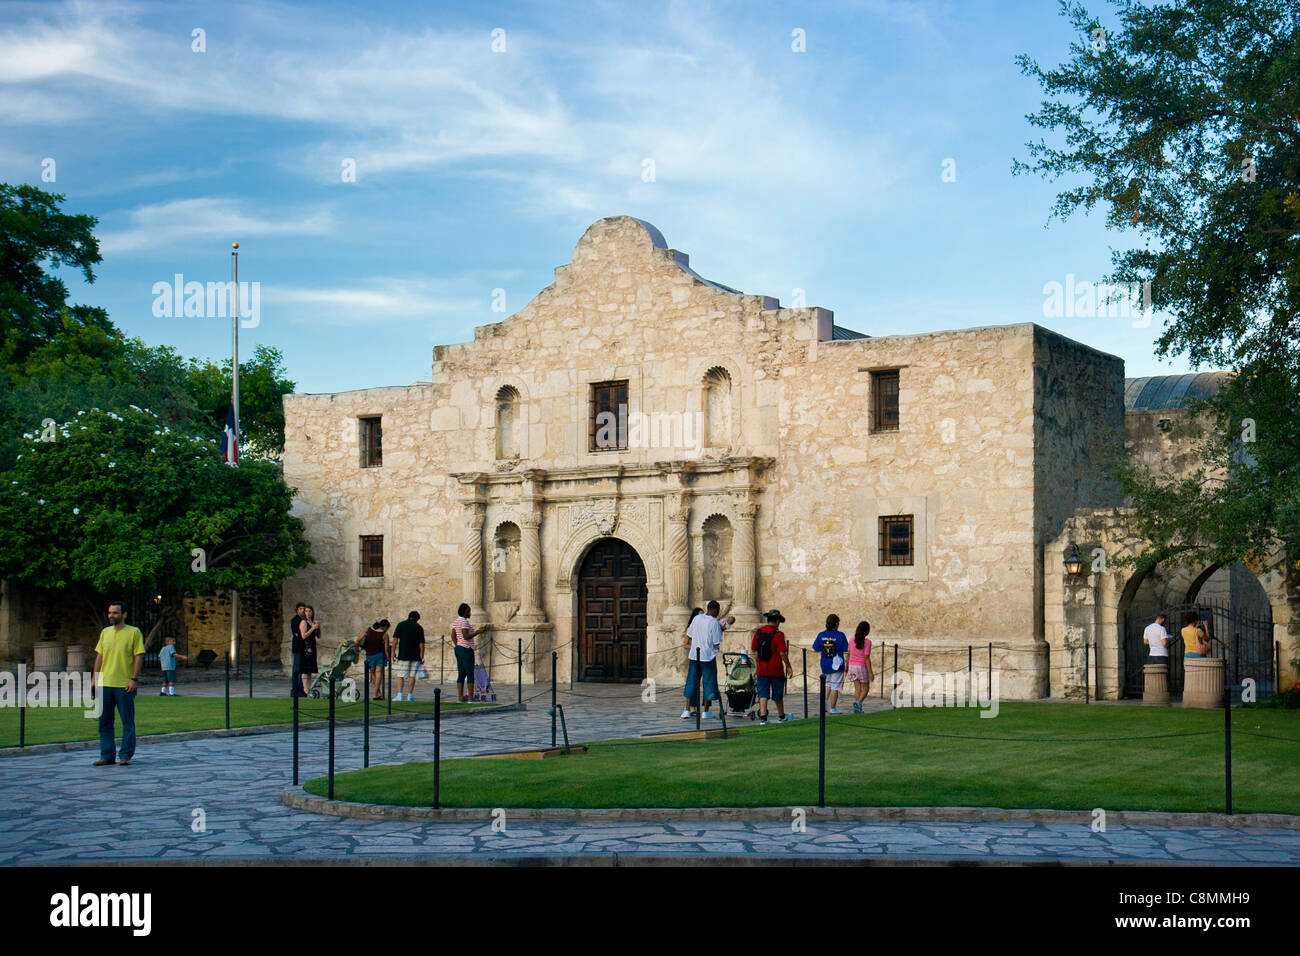 Touristes en dehors de l'Alamo à San Antonio, Texas, États-Unis Banque D'Images